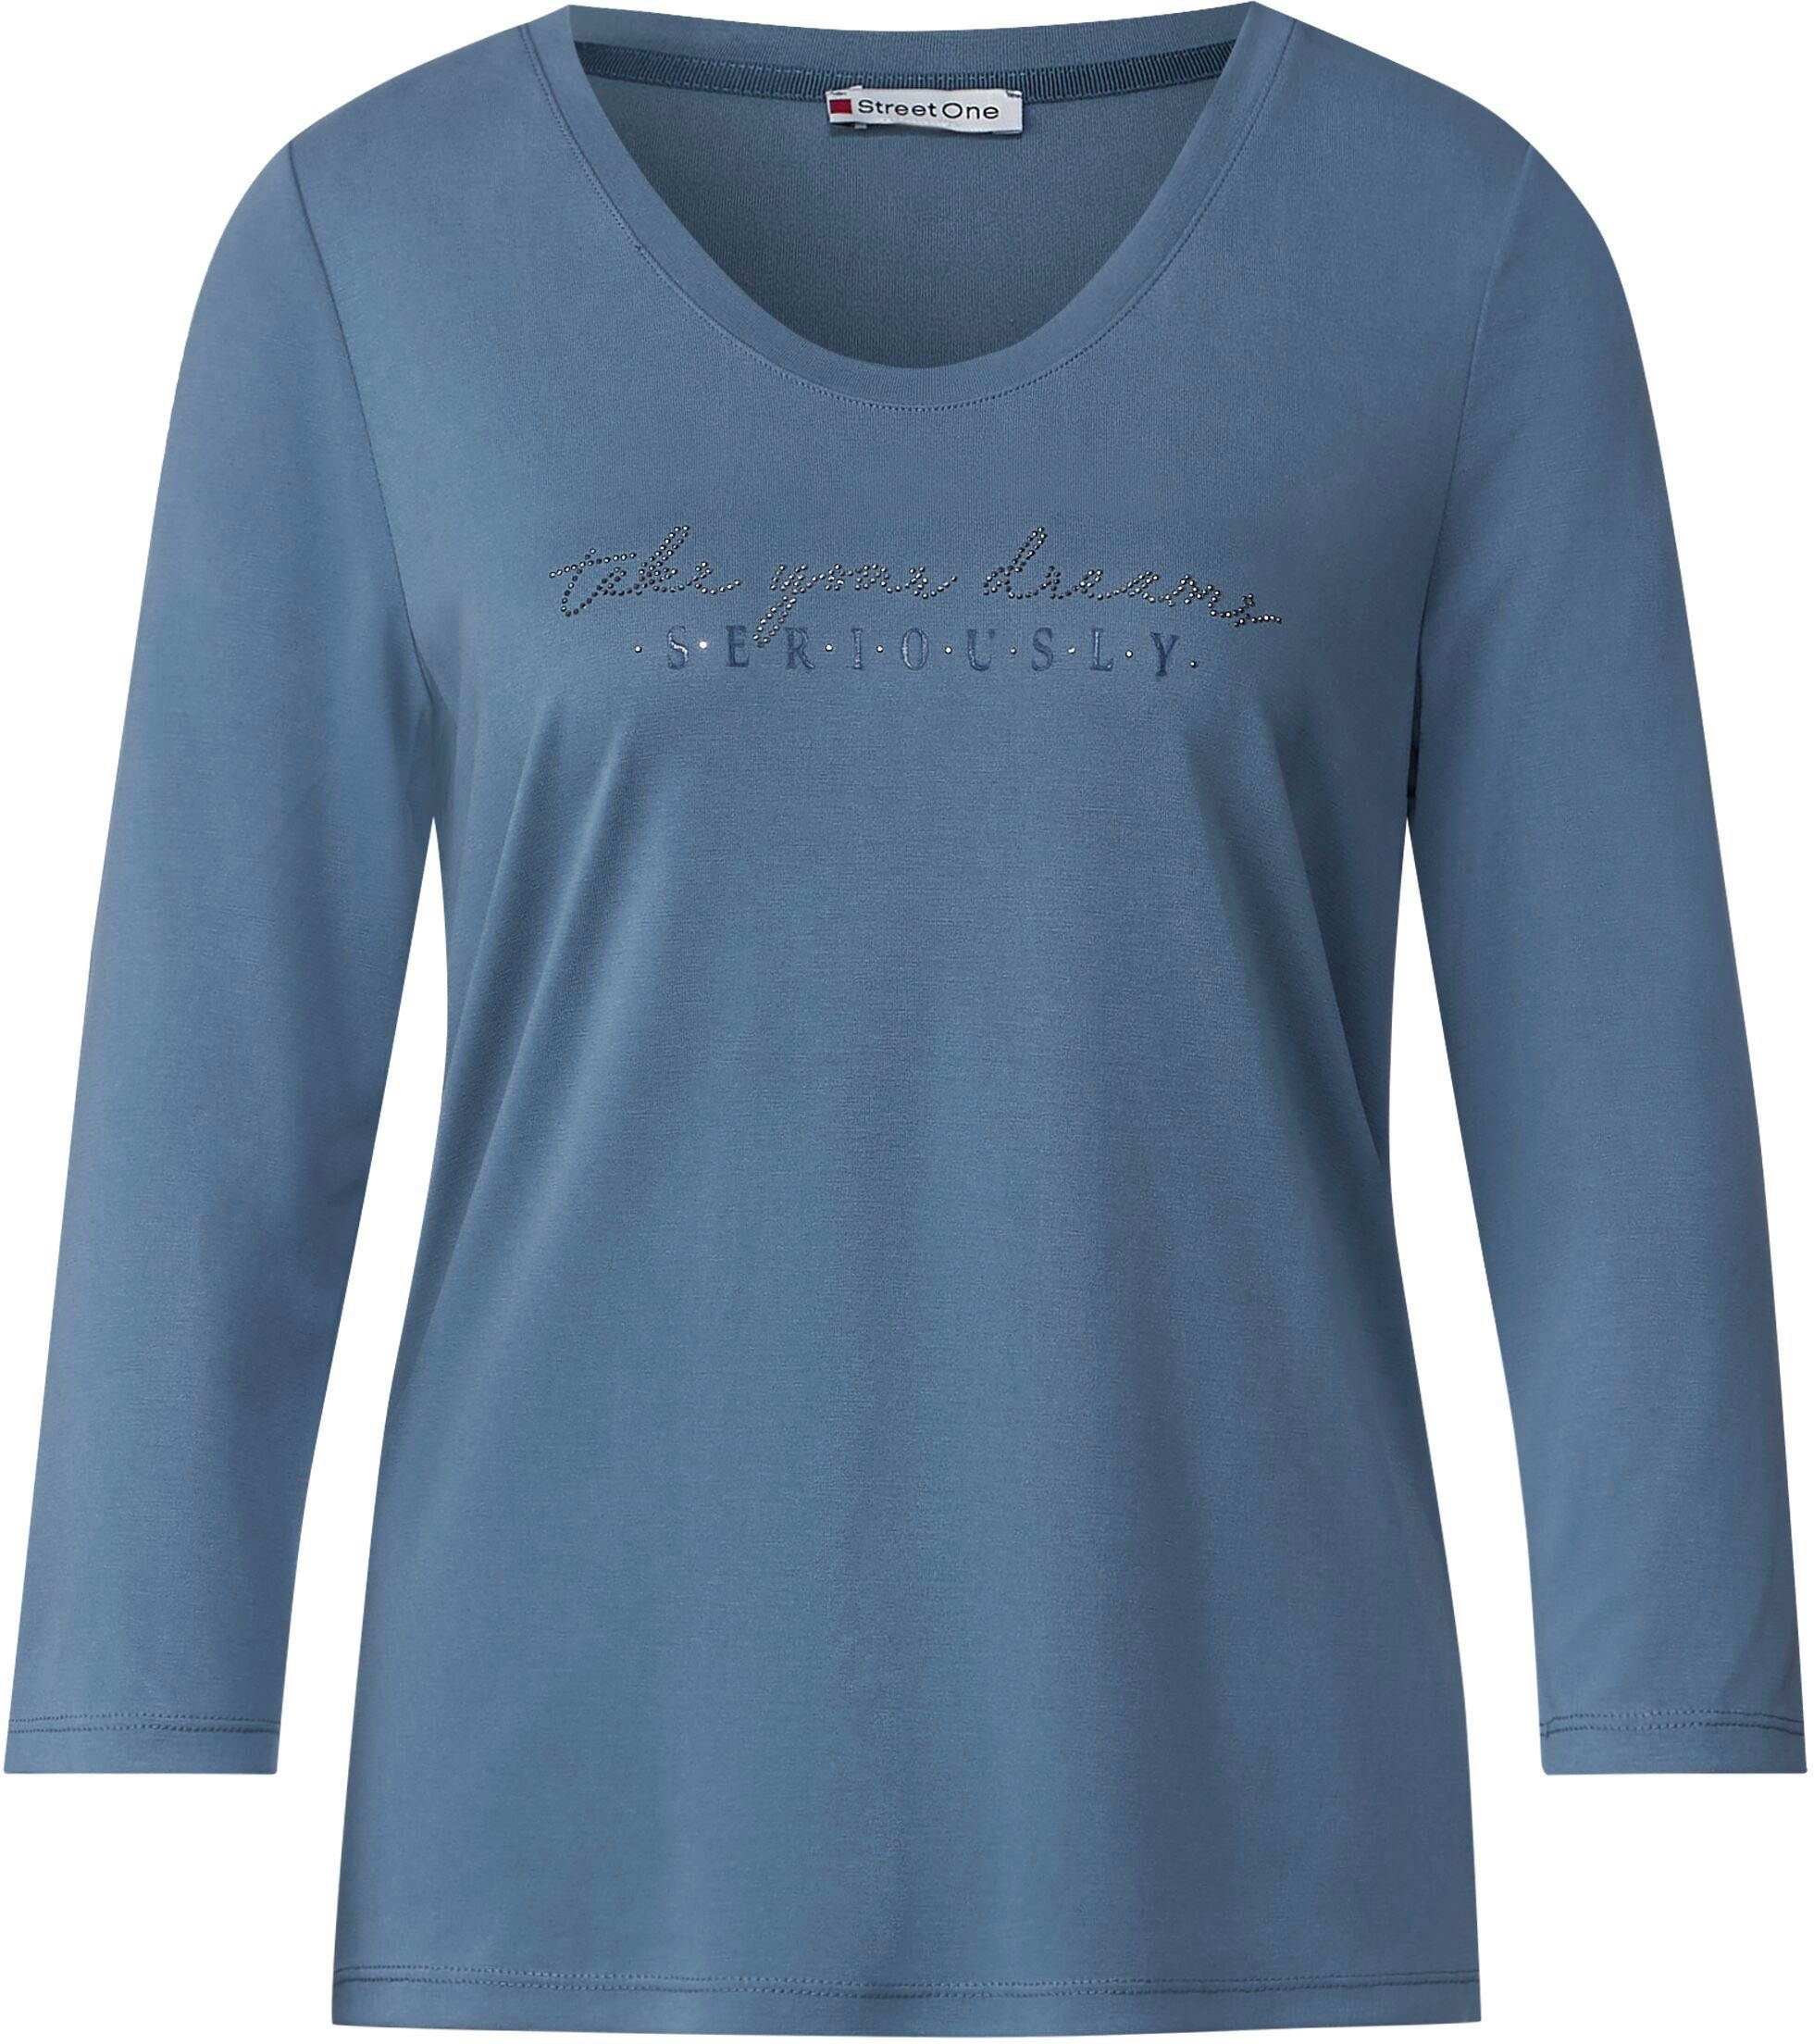 3/4-Arm-Shirt mit ONE bay STREET blue dark auf der Brust Steinchen-Wording